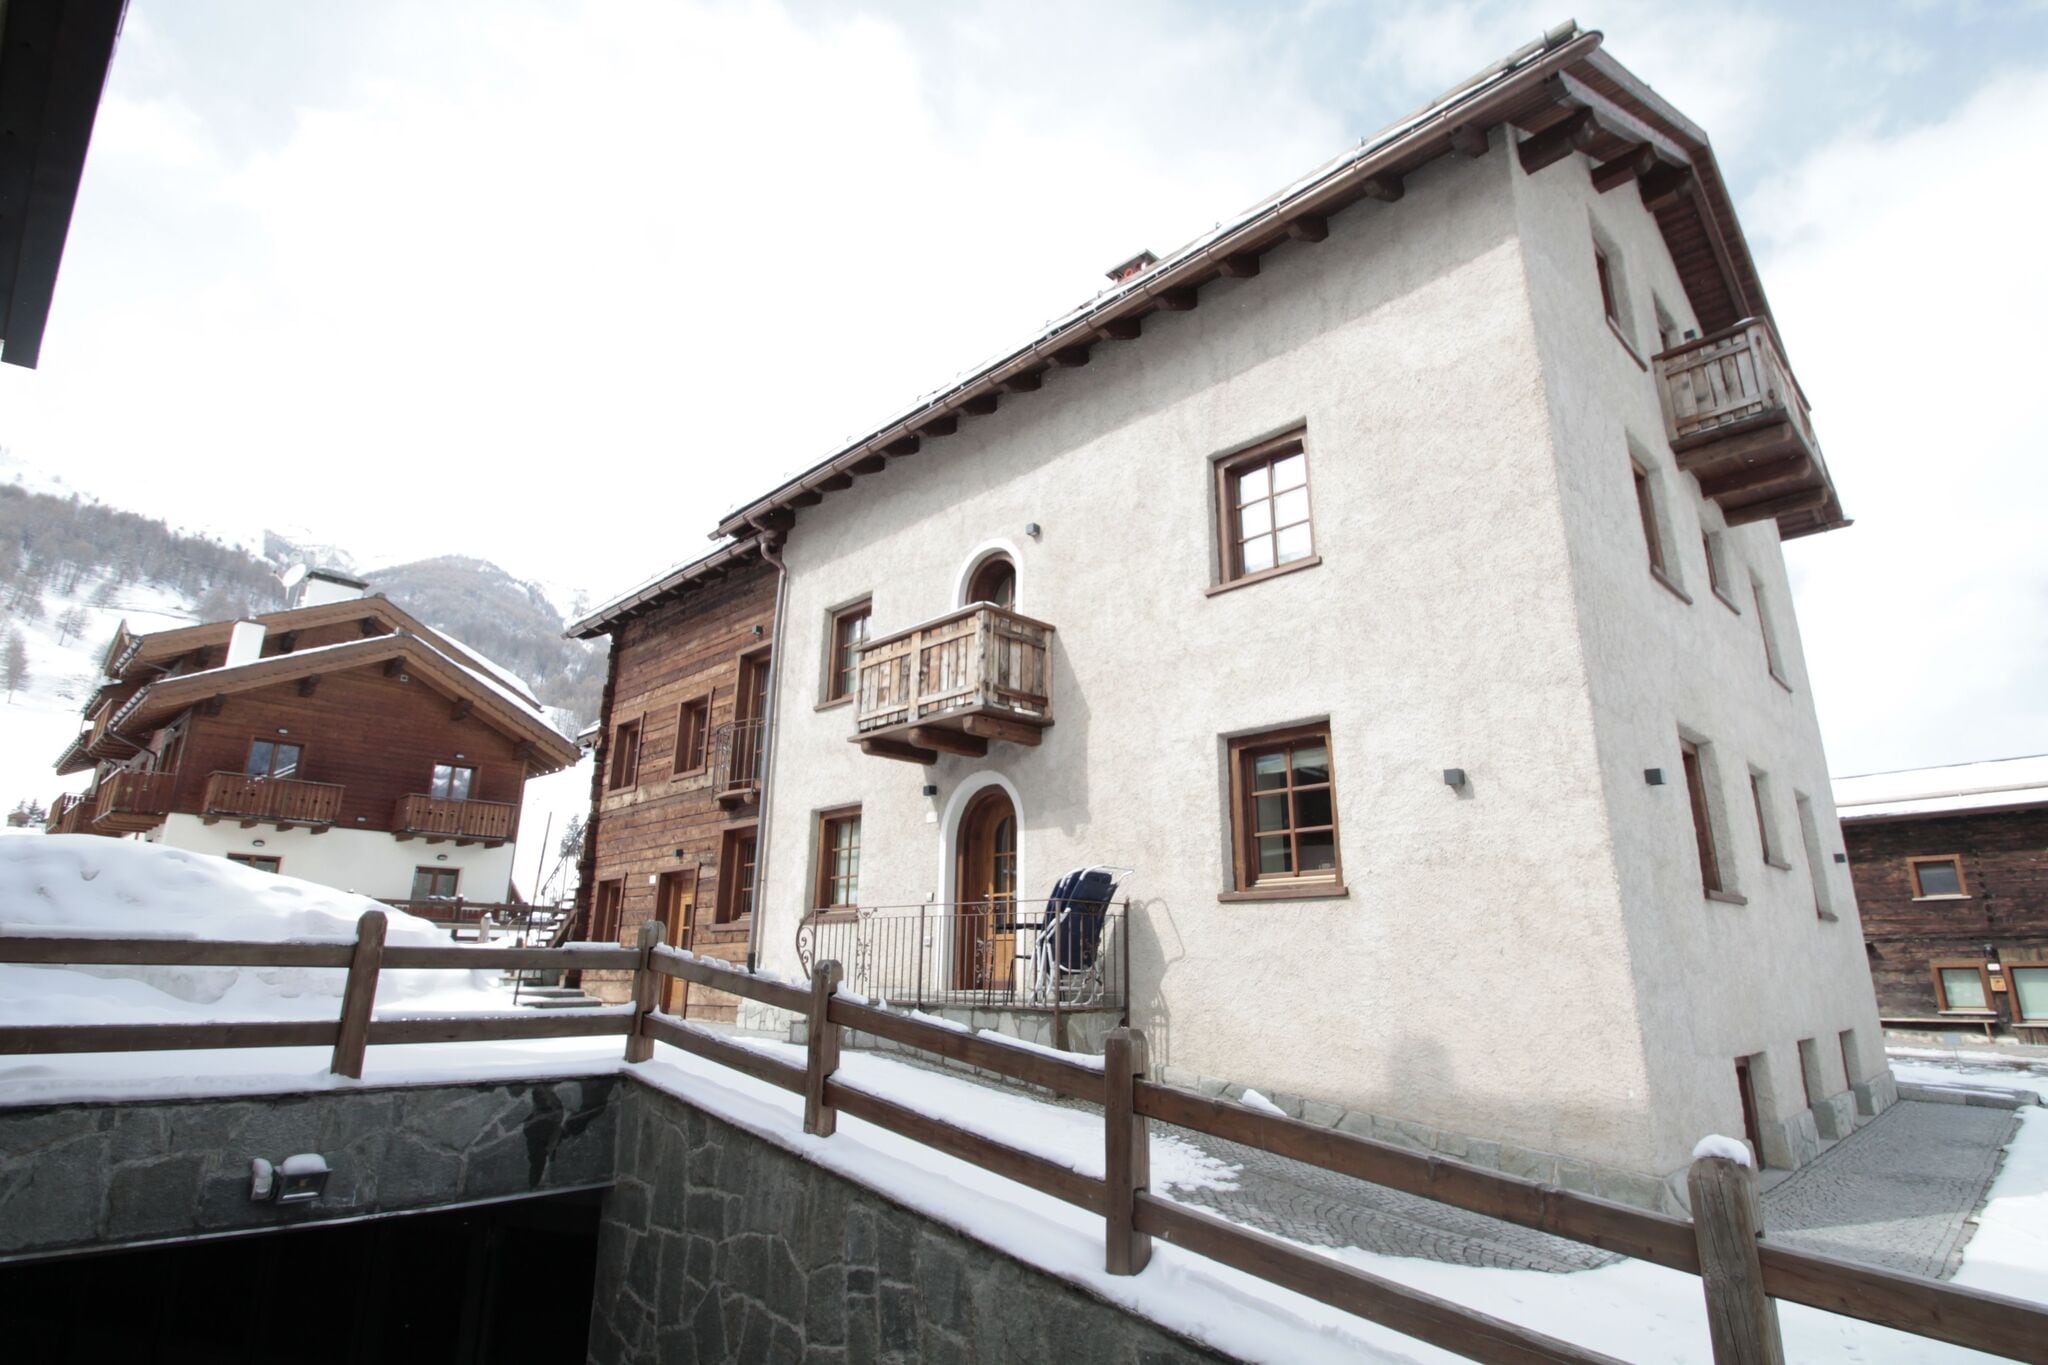 Brand new apartment in Livigno, near ski area